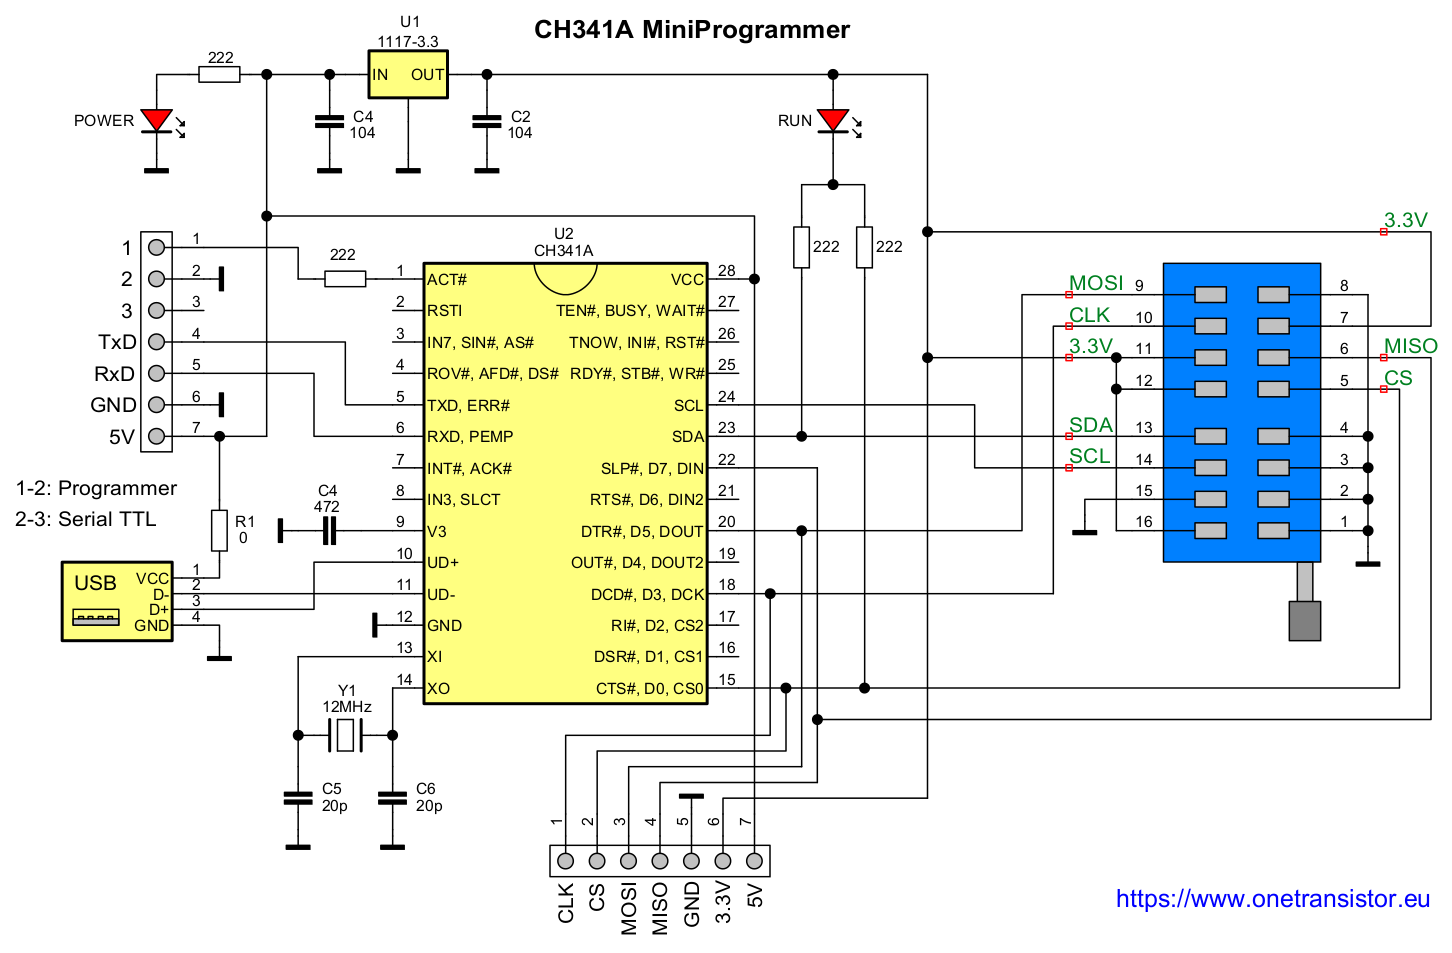 Med venlig hilsen arbejde I udlandet CH341A Mini Programmer Schematic and Drivers · One Transistor